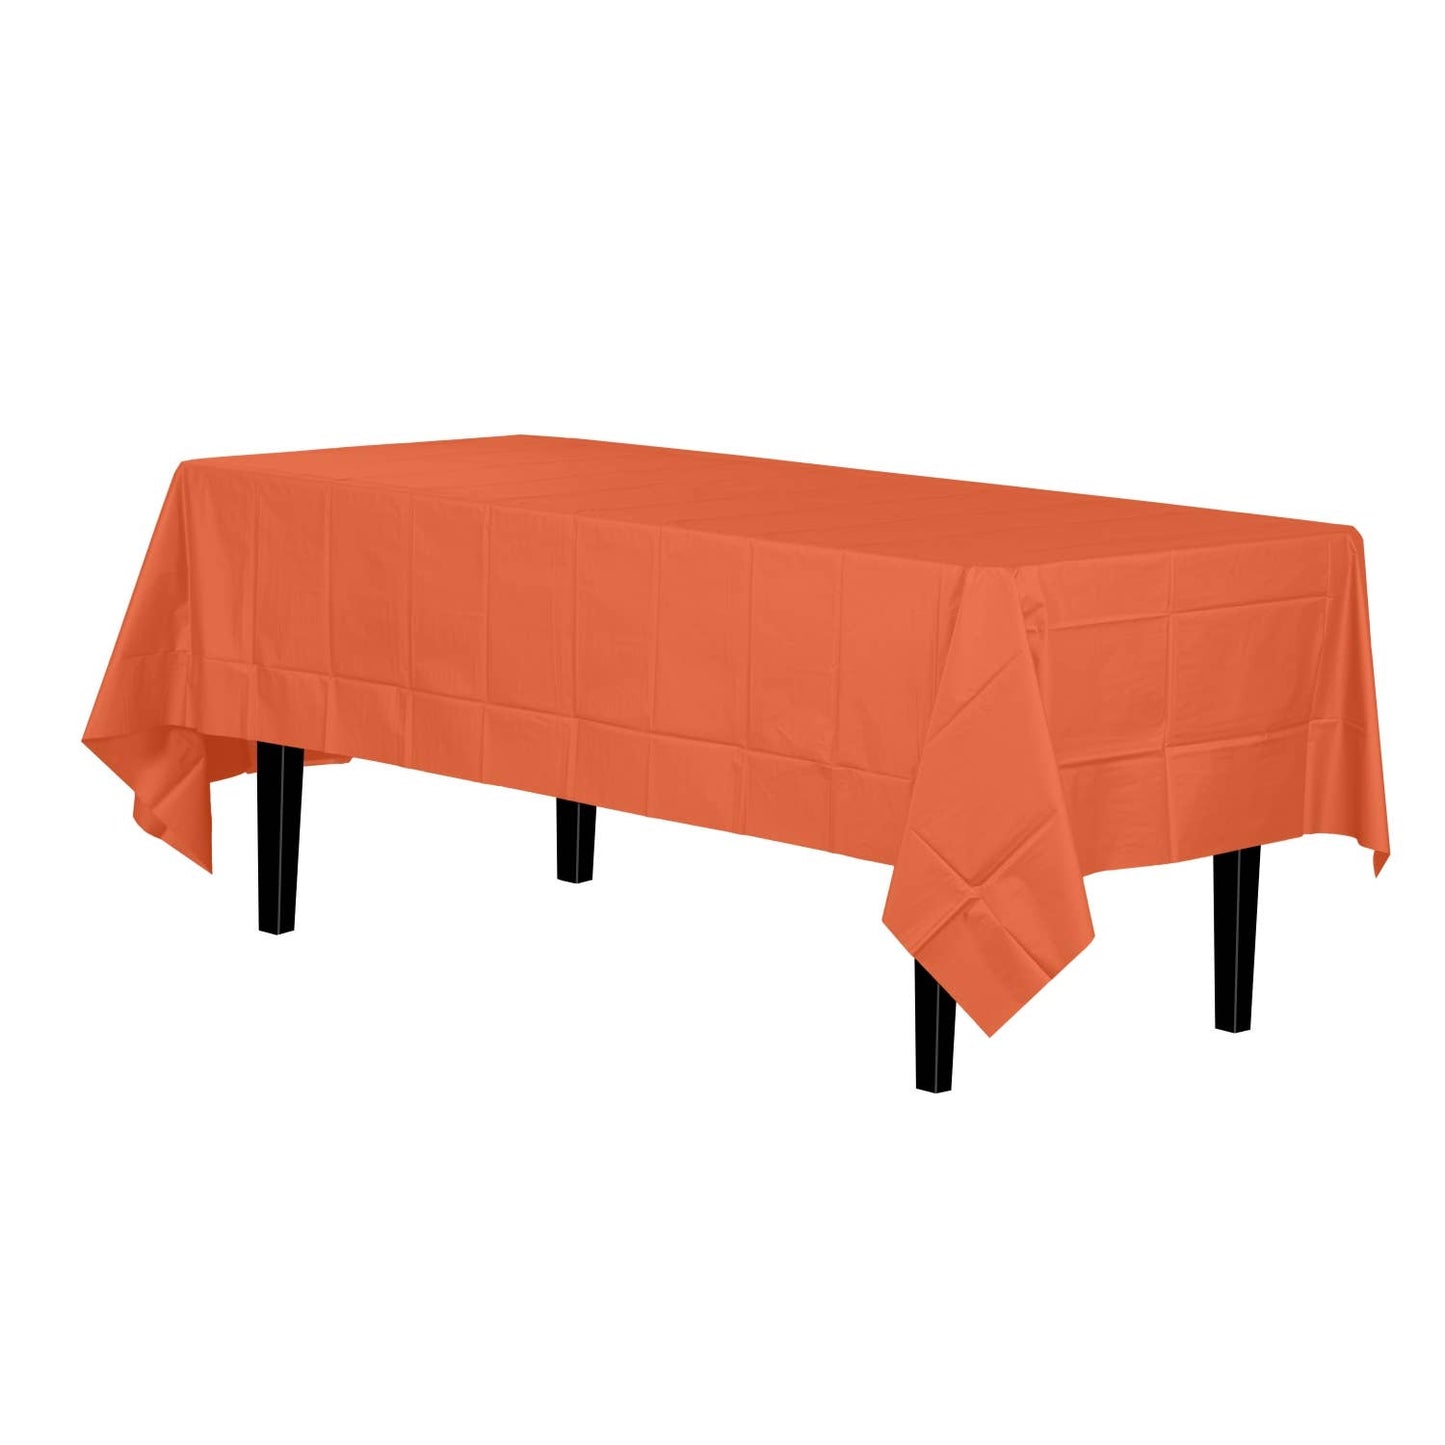 Premium Orange Disposable Plastic Tablecloth | 54x108In.